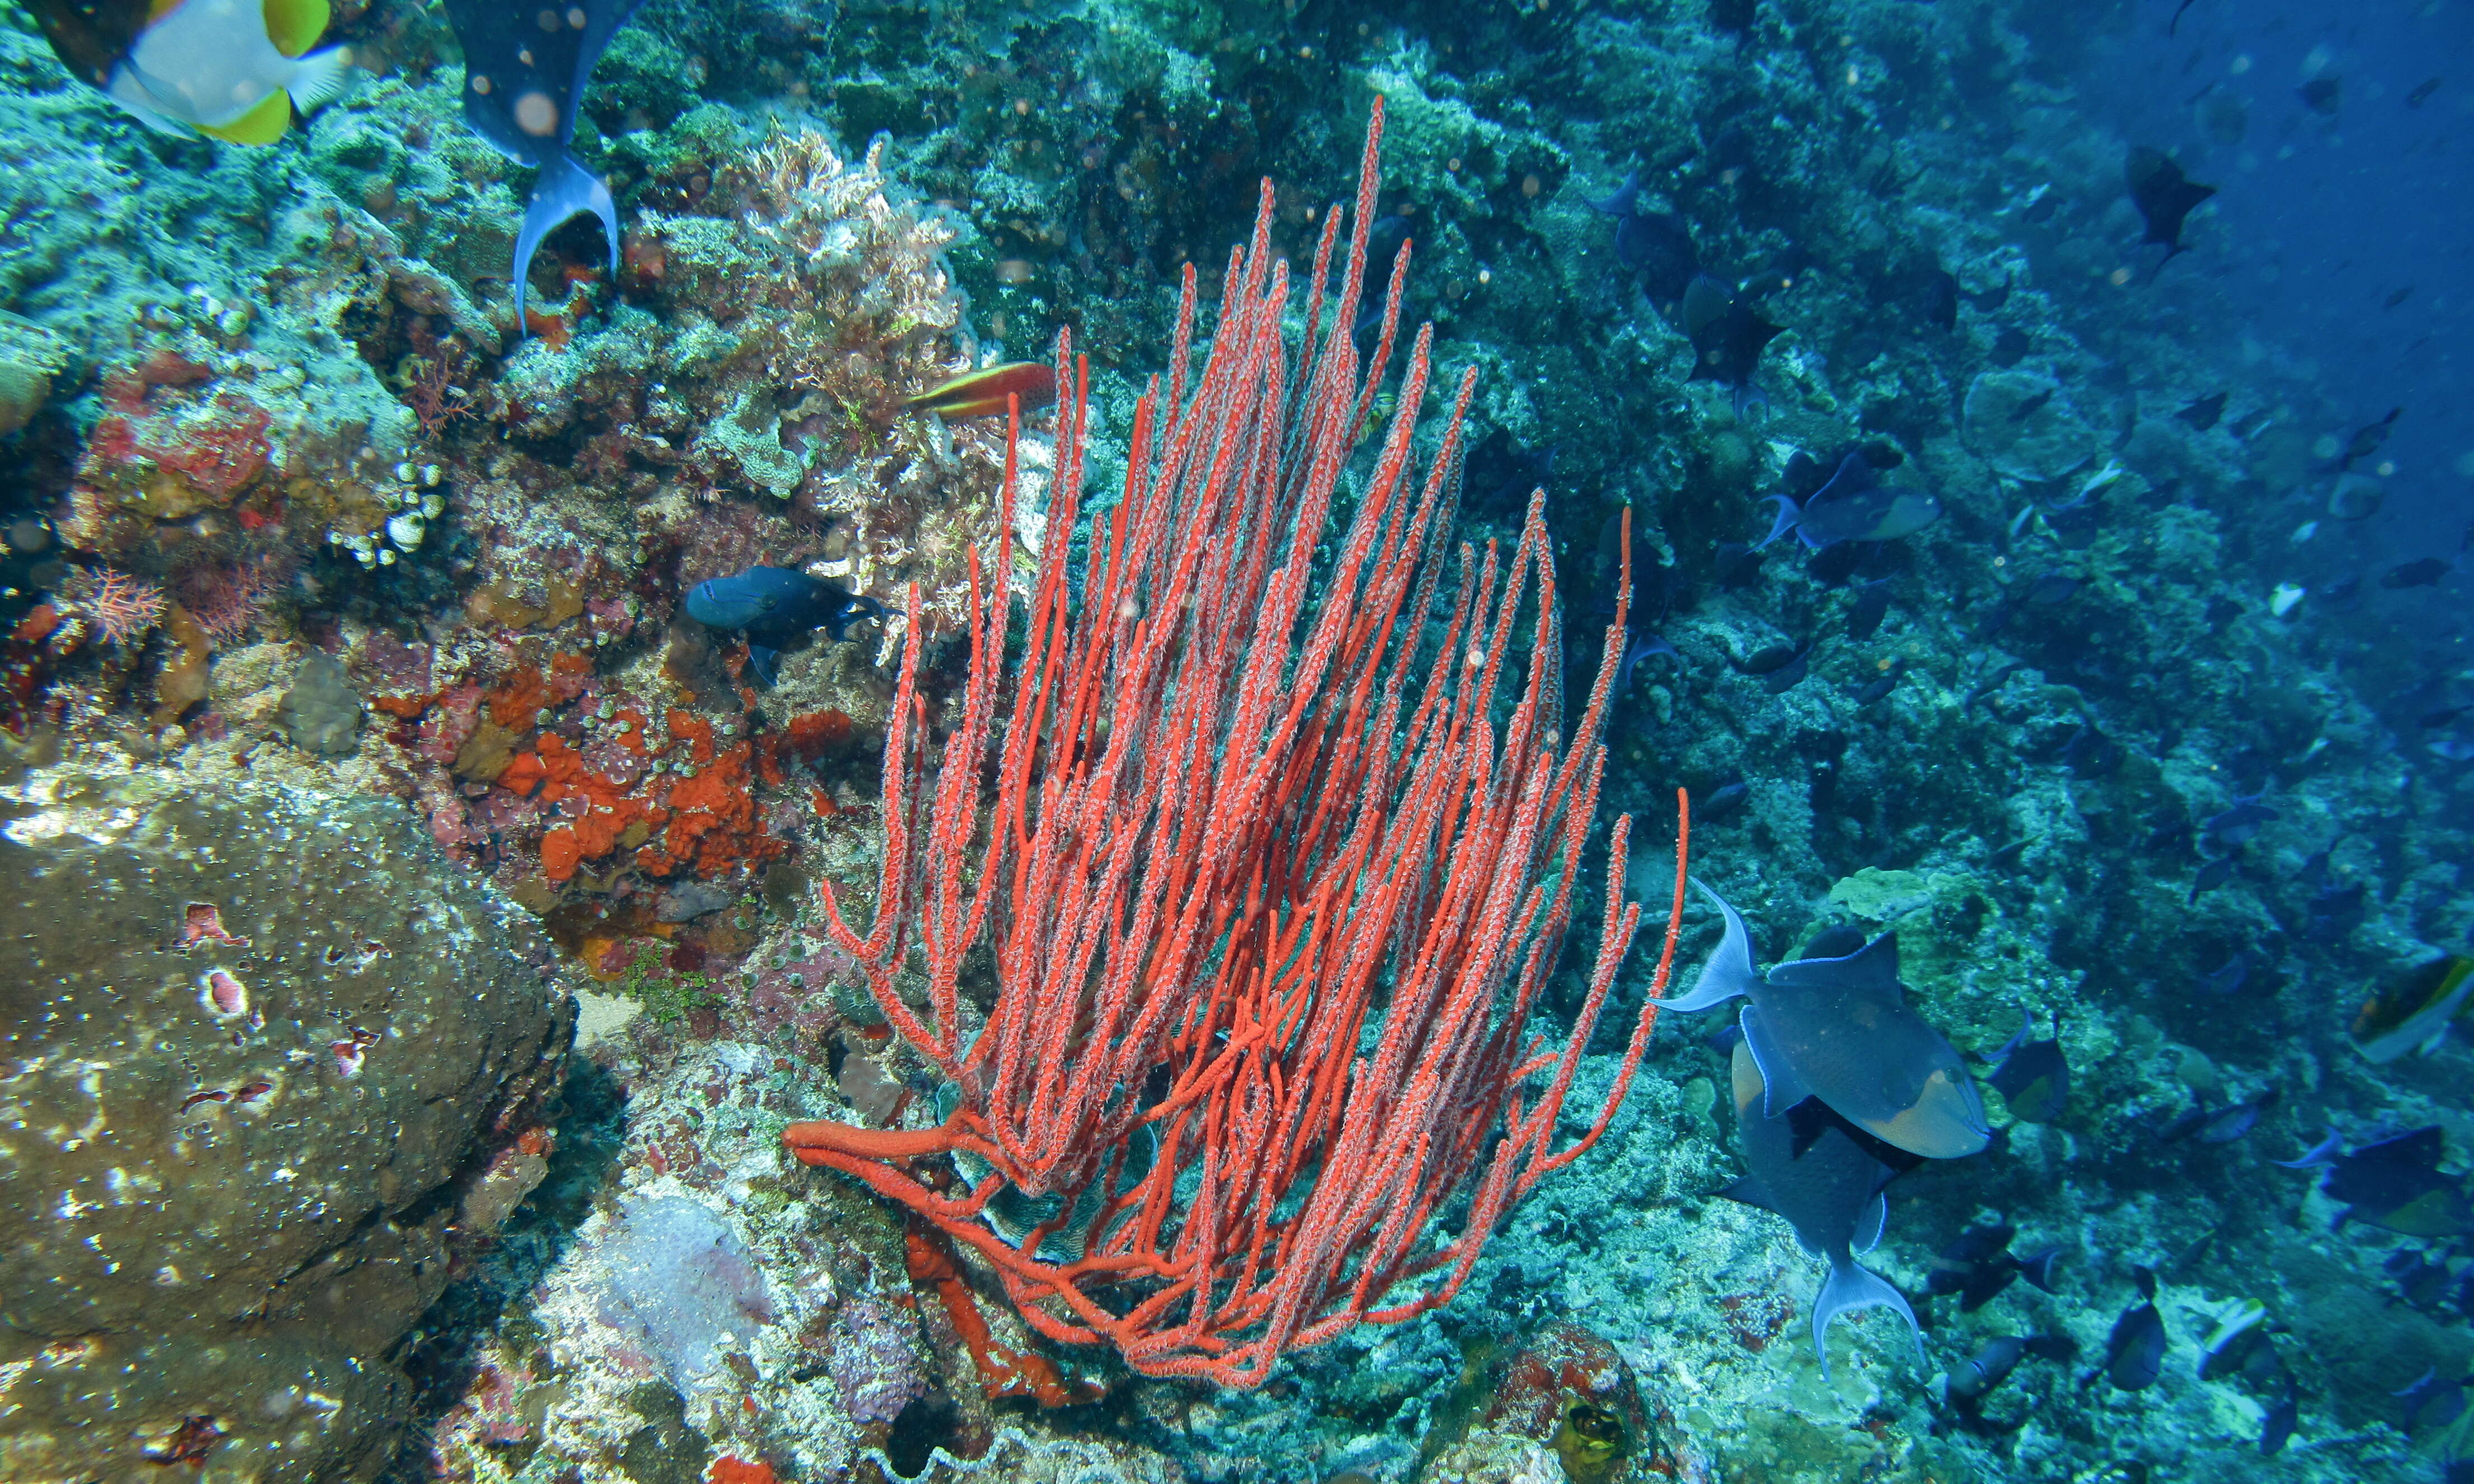 Image of Orange sea whips